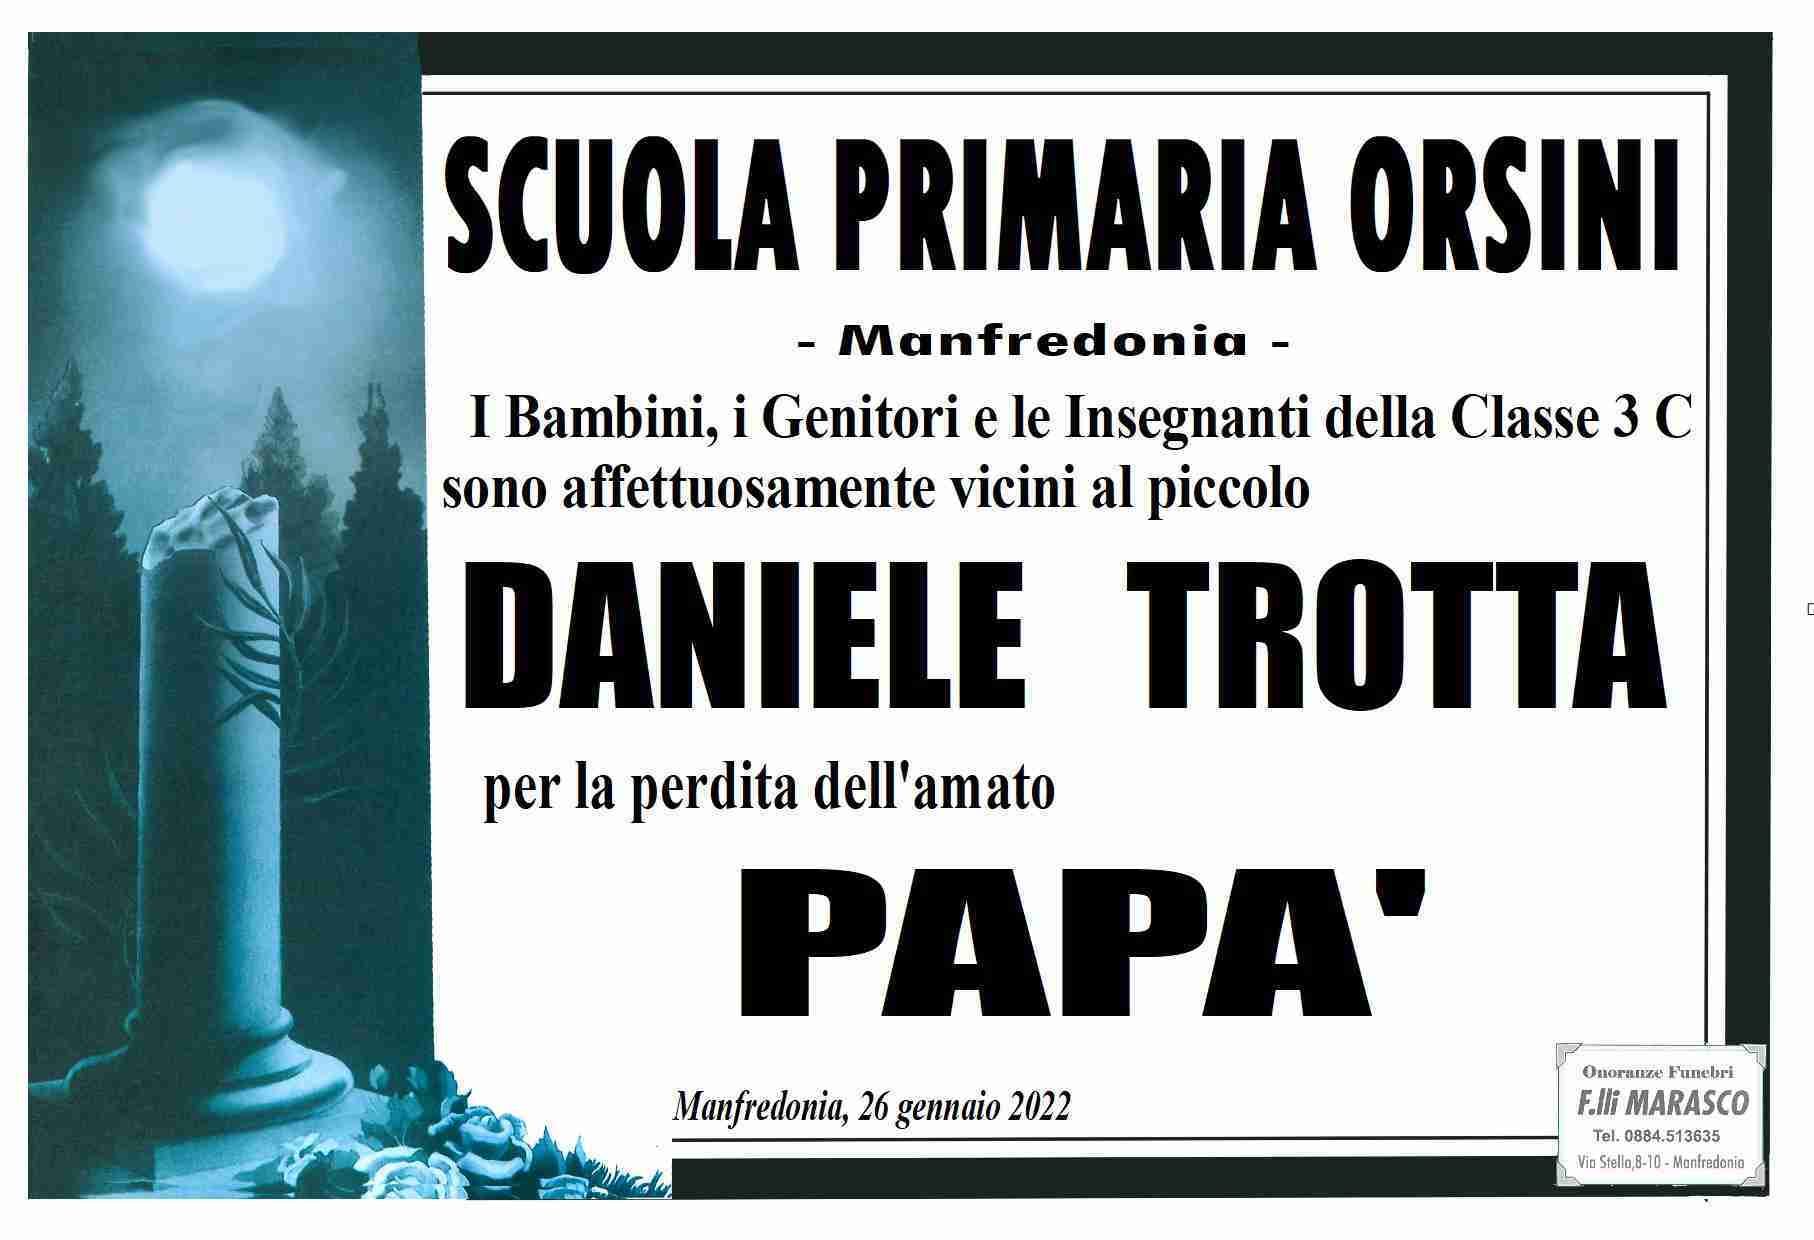 Domenico Trotta